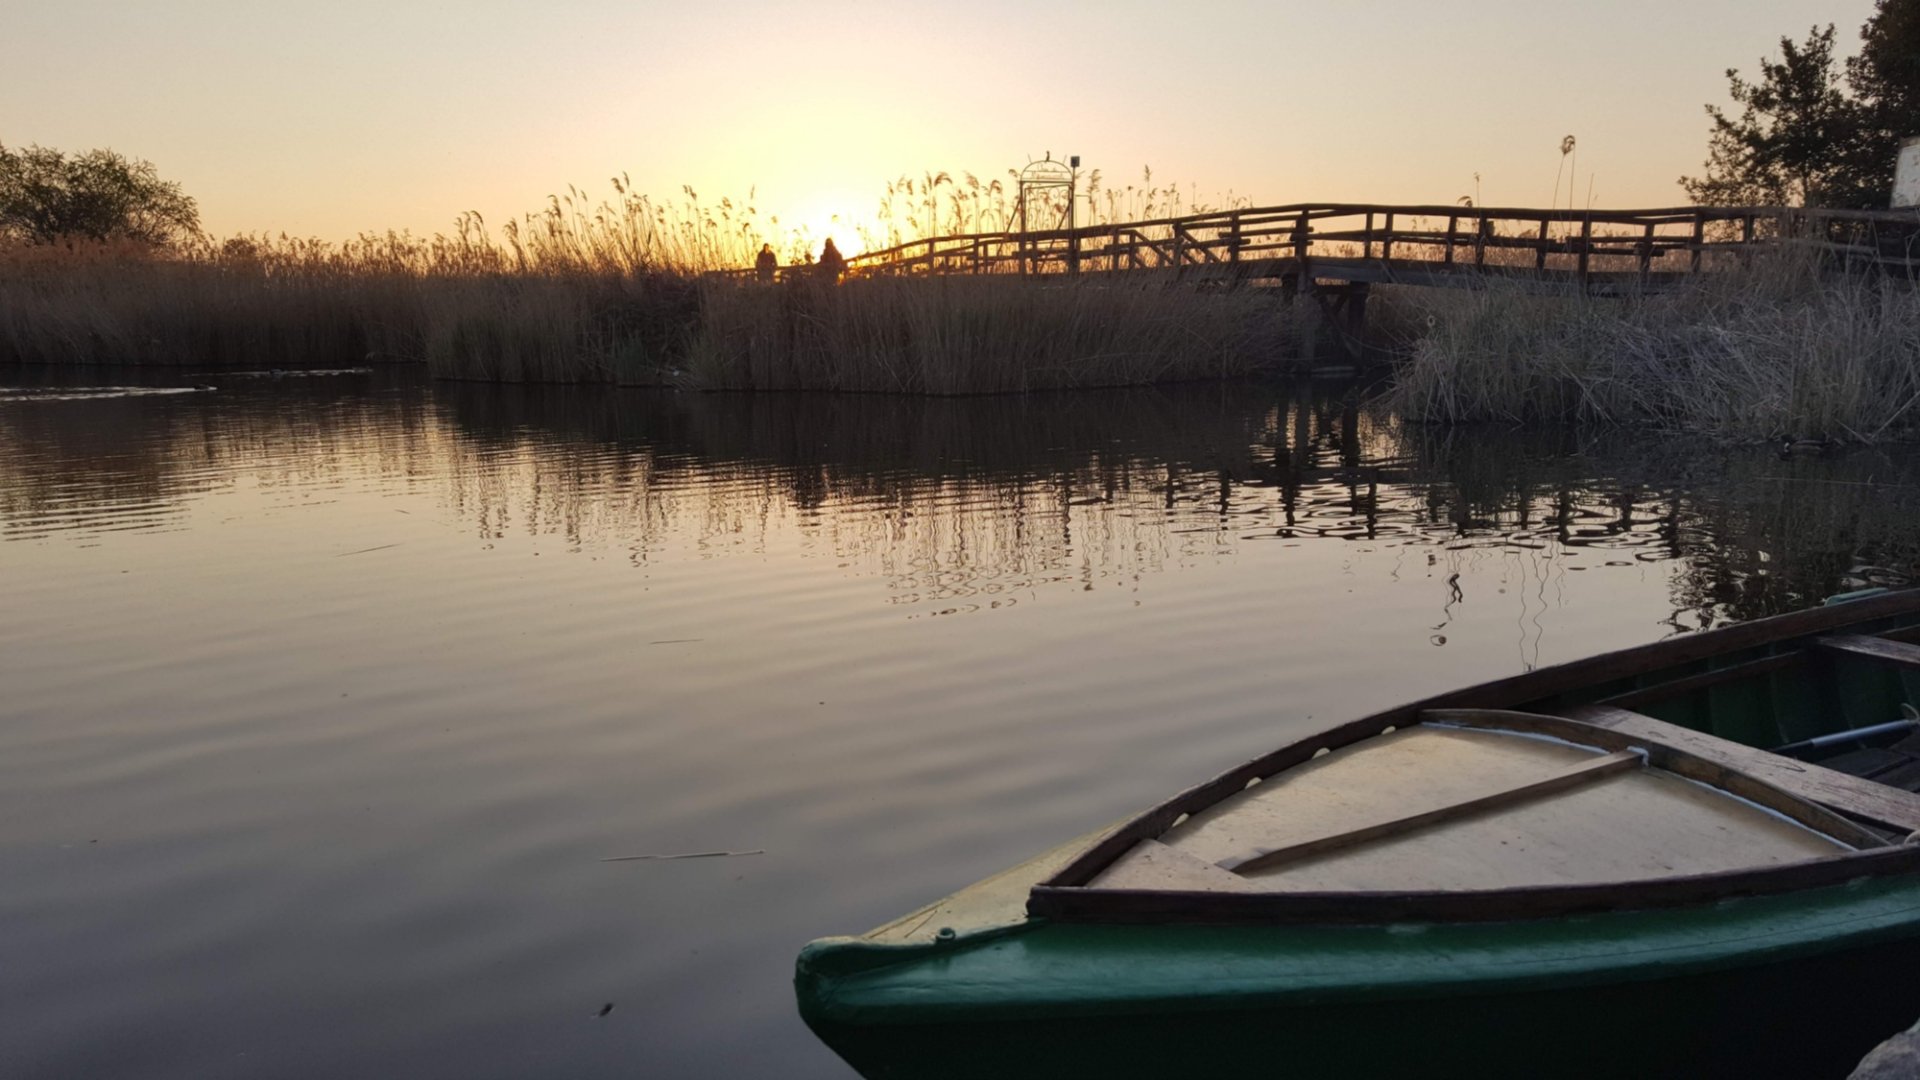 tipica barca in legno nel lago di massaciuccoli durante il tramonto